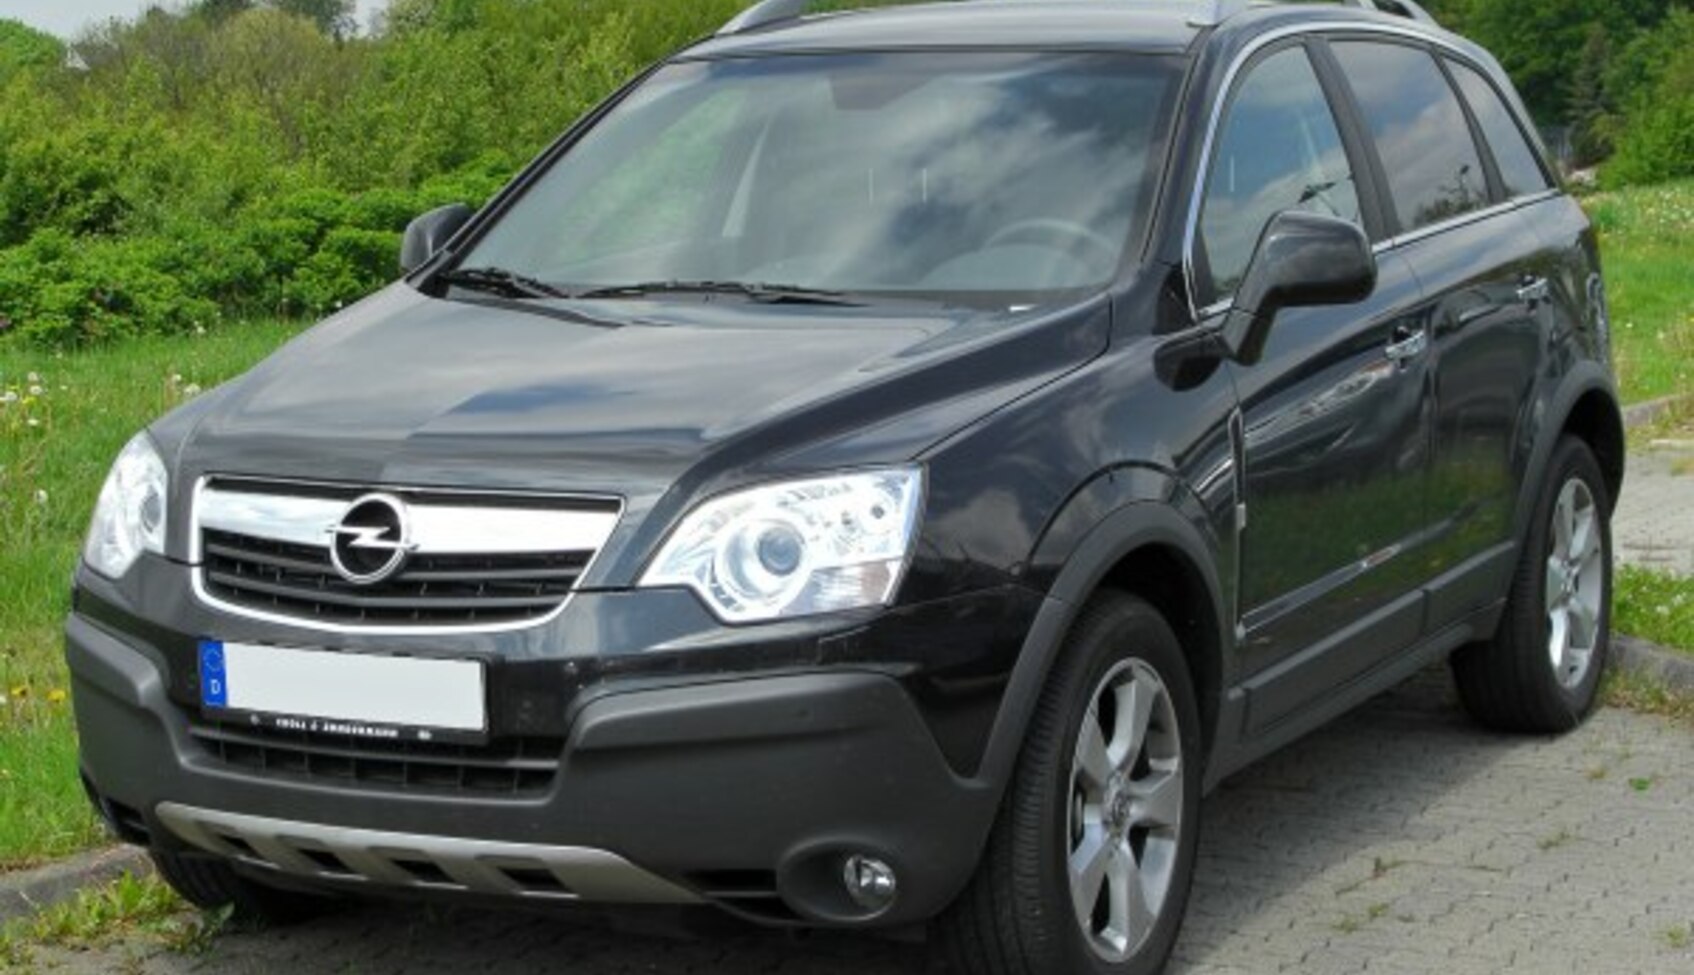 Opel Antara 2.0 CDTI (127 Hp) ECOTEC 2006, 2007, 2008, 2009, 2010